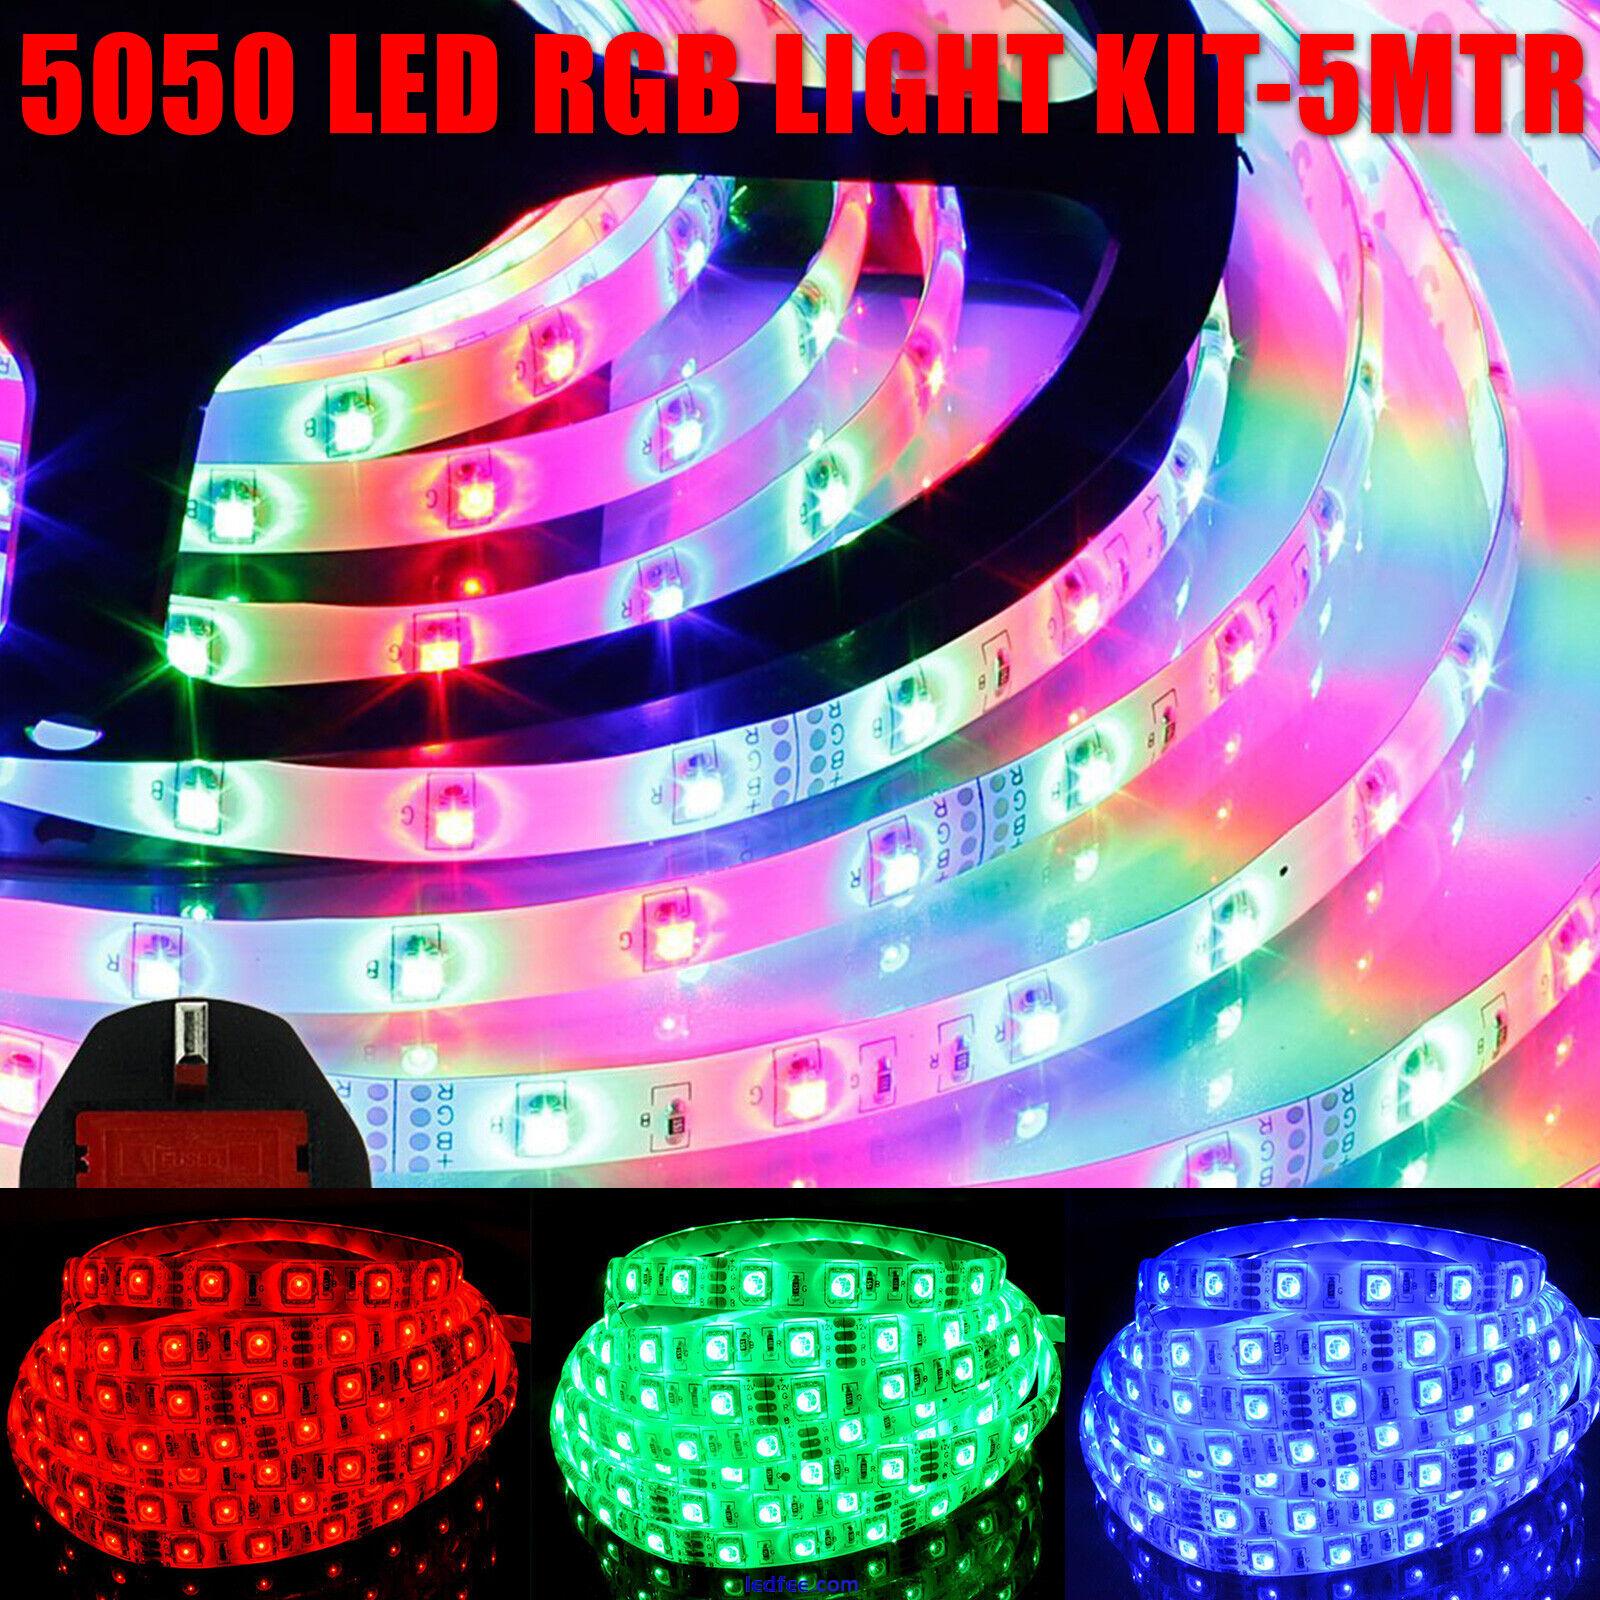 LED Strip 220V 5050 SMD Waterproof Tape Lights Rope Color With UK Plug Kit 5 